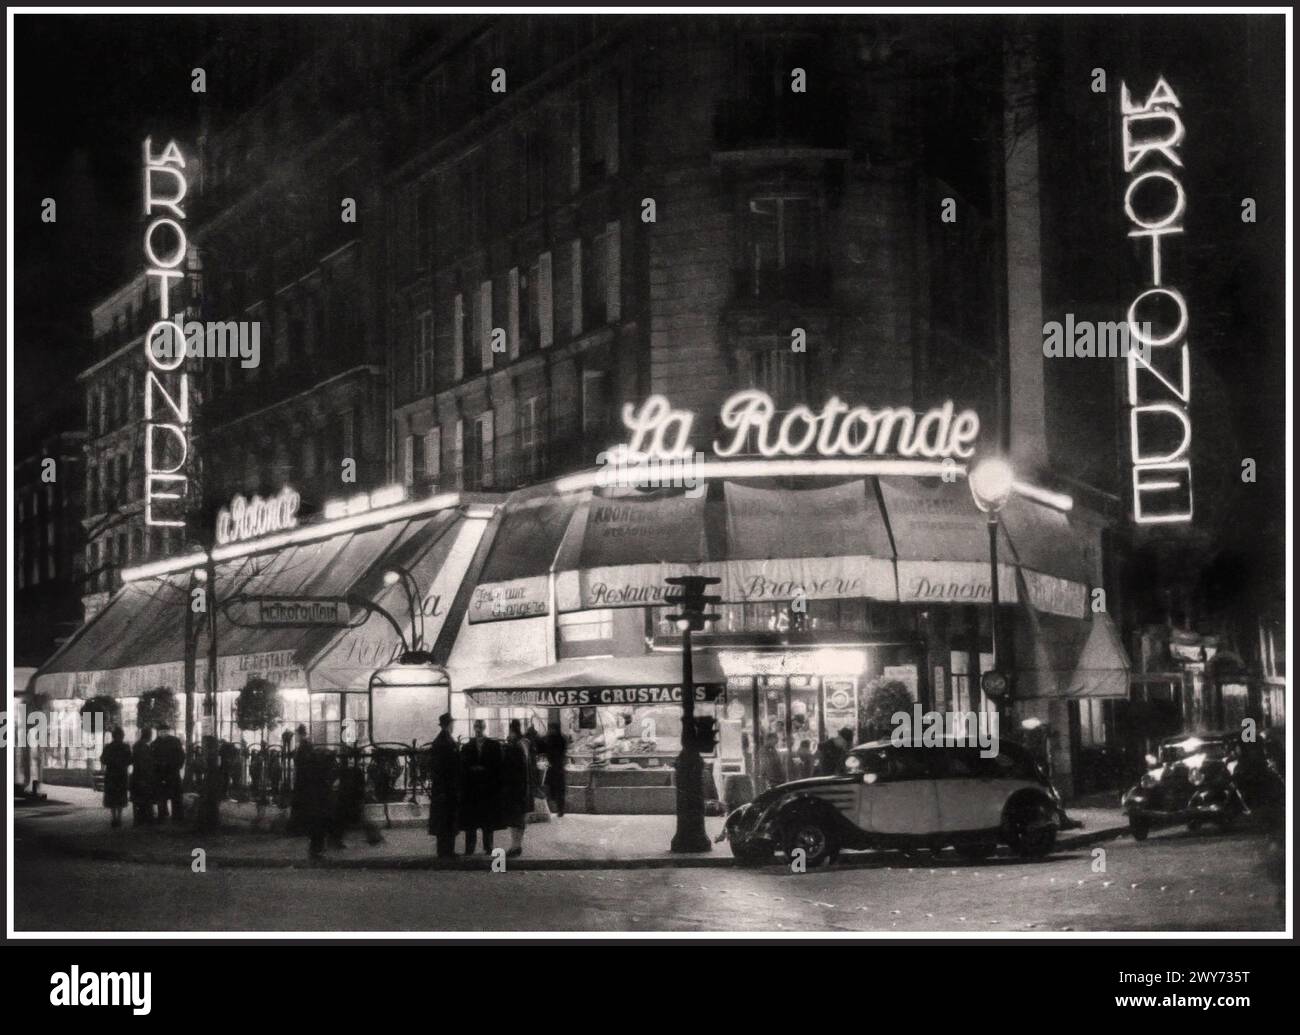 1920er Jahre Paris Vintage Retro berühmtes Cafe Restaurant 'LA ROTONDE' Brasserie, Tanz Paris Frankreich. La Rotonde wurde 1911 eröffnet und liegt direkt gegenüber dem Boulevard du Montparnasse von Le Dôme. In den 1920er Jahren waren diese Cafés das Zentrum des Expatriate-Lebens in Paris. Montparnasse war voll von Cafés, in denen Künstler Ideen austauschen und für ein paar Centimes bis weit in die Nacht einen Tisch verweilen konnten. Montparnasse Paris Frankreich Stockfoto